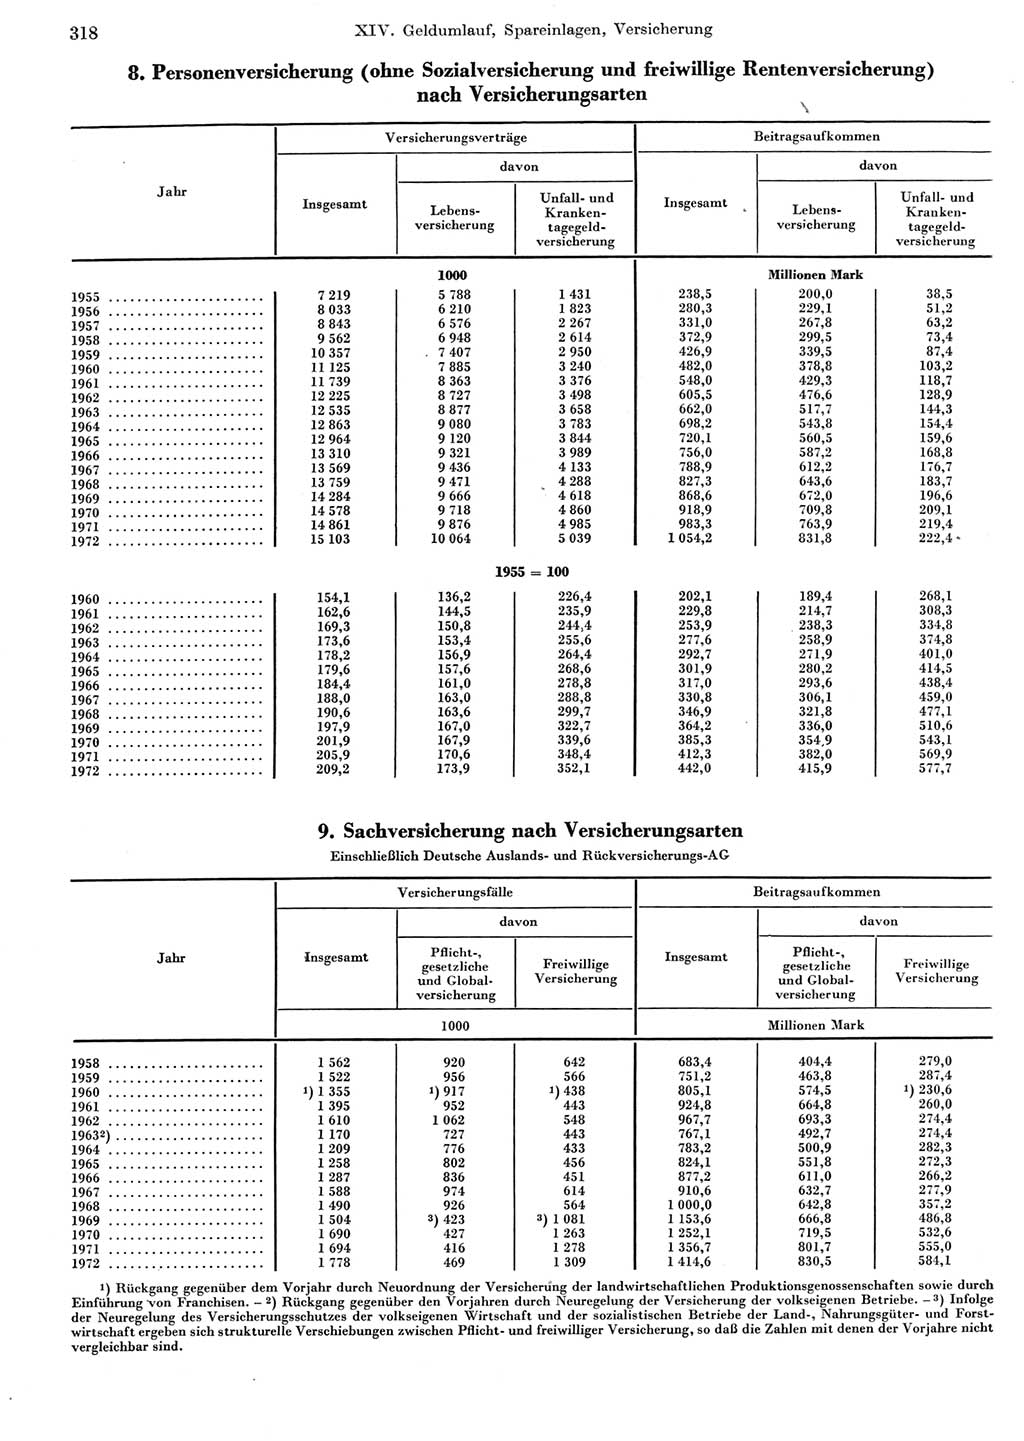 Statistisches Jahrbuch der Deutschen Demokratischen Republik (DDR) 1973, Seite 318 (Stat. Jb. DDR 1973, S. 318)